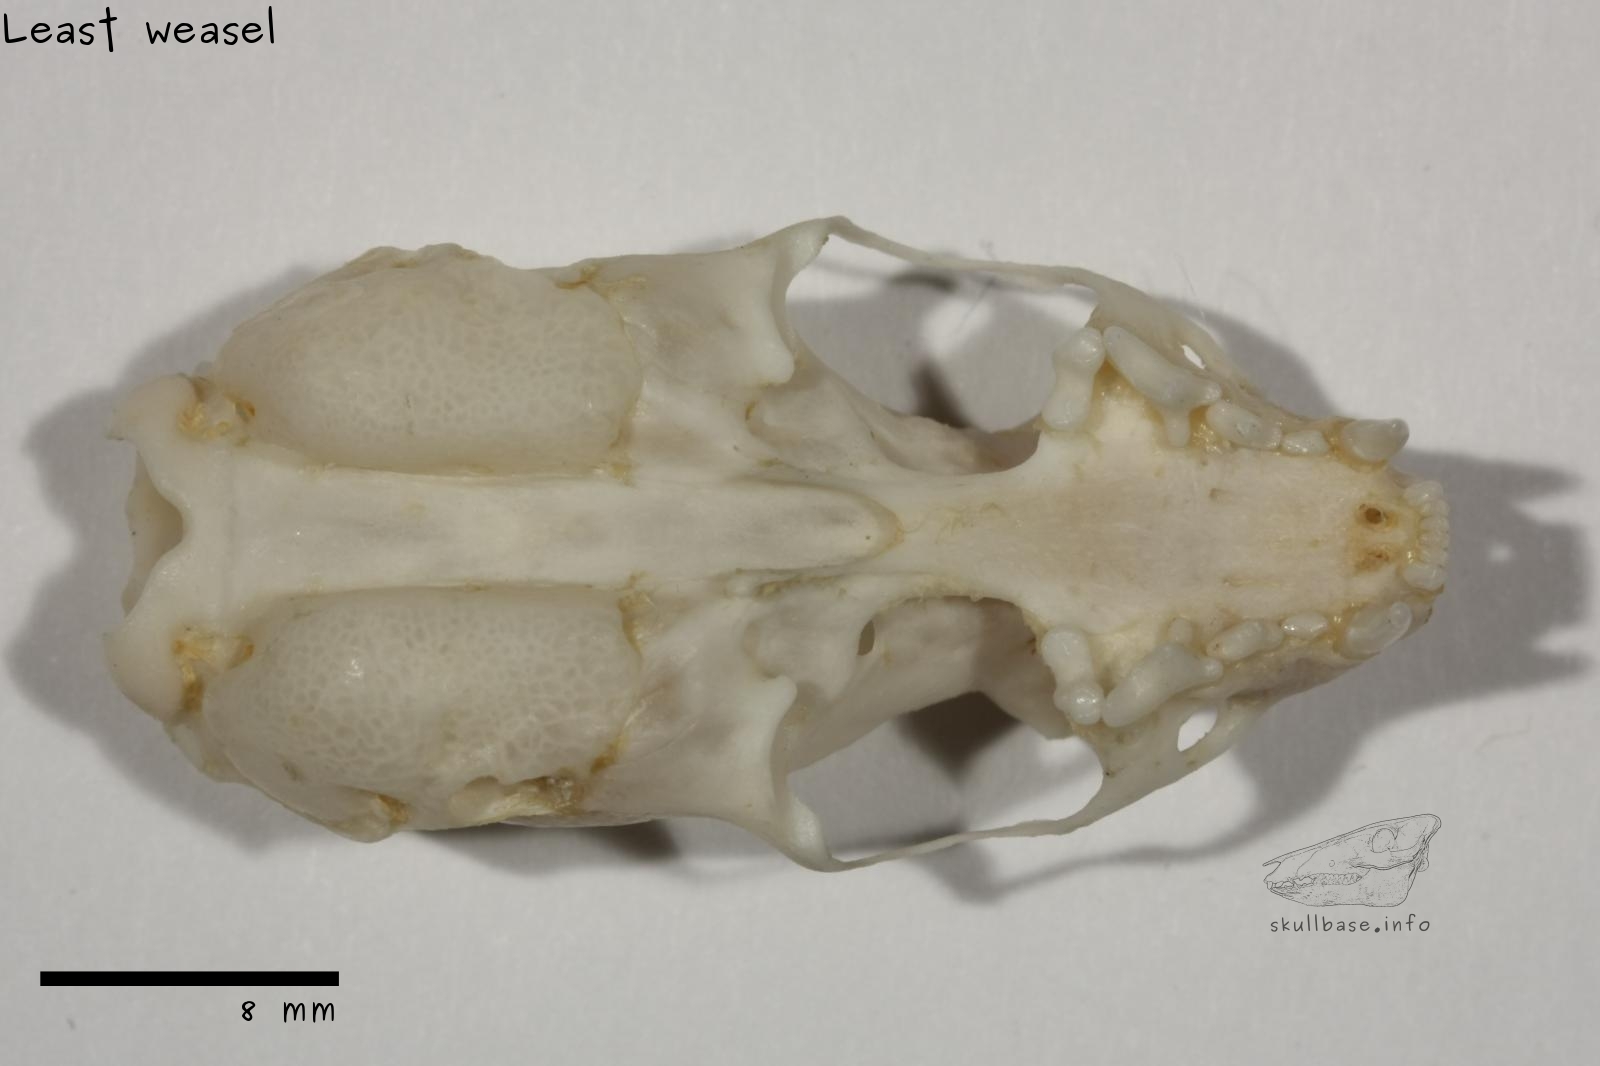 Least weasel (Mustela nivalis) skull ventral view